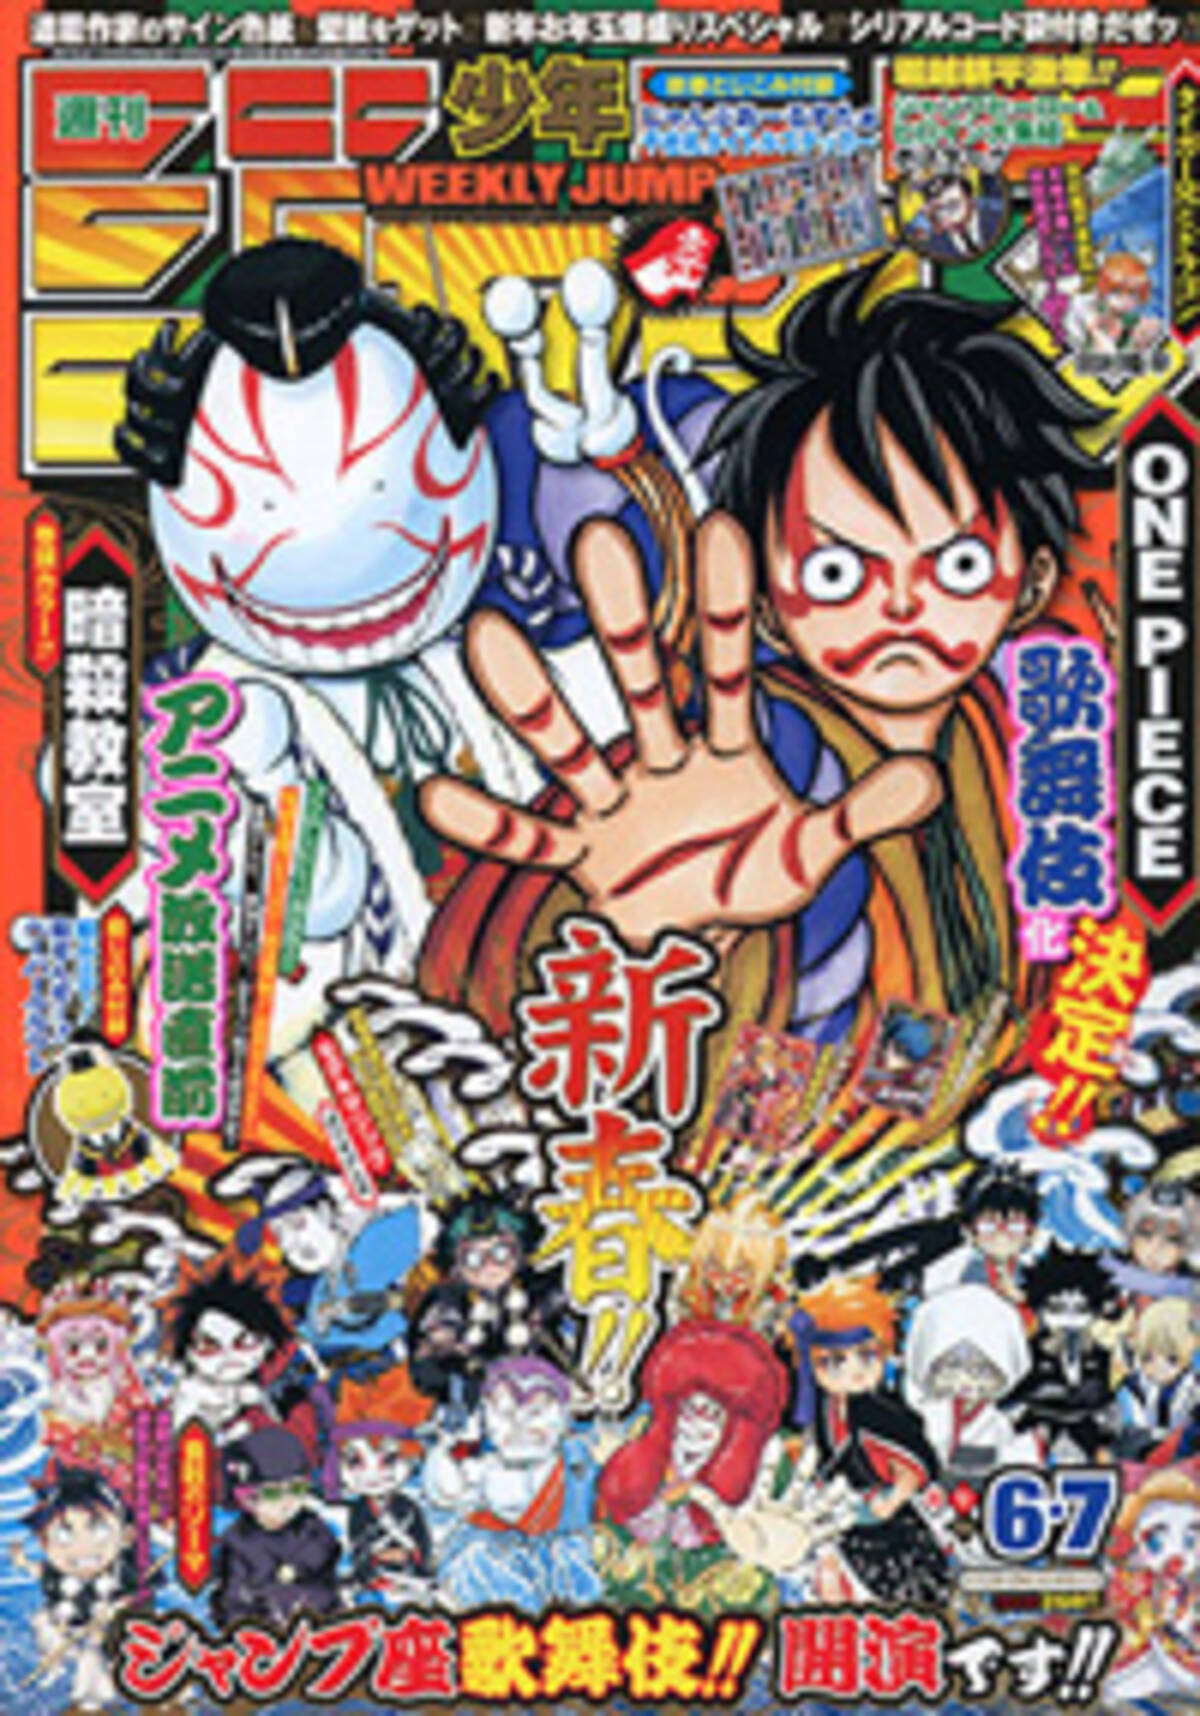 2 5次元ブームとは一味違う 週刊少年ジャンプ 表紙でも盛り上げる One Piece 歌舞伎化 2015年1月5日 エキサイトニュース